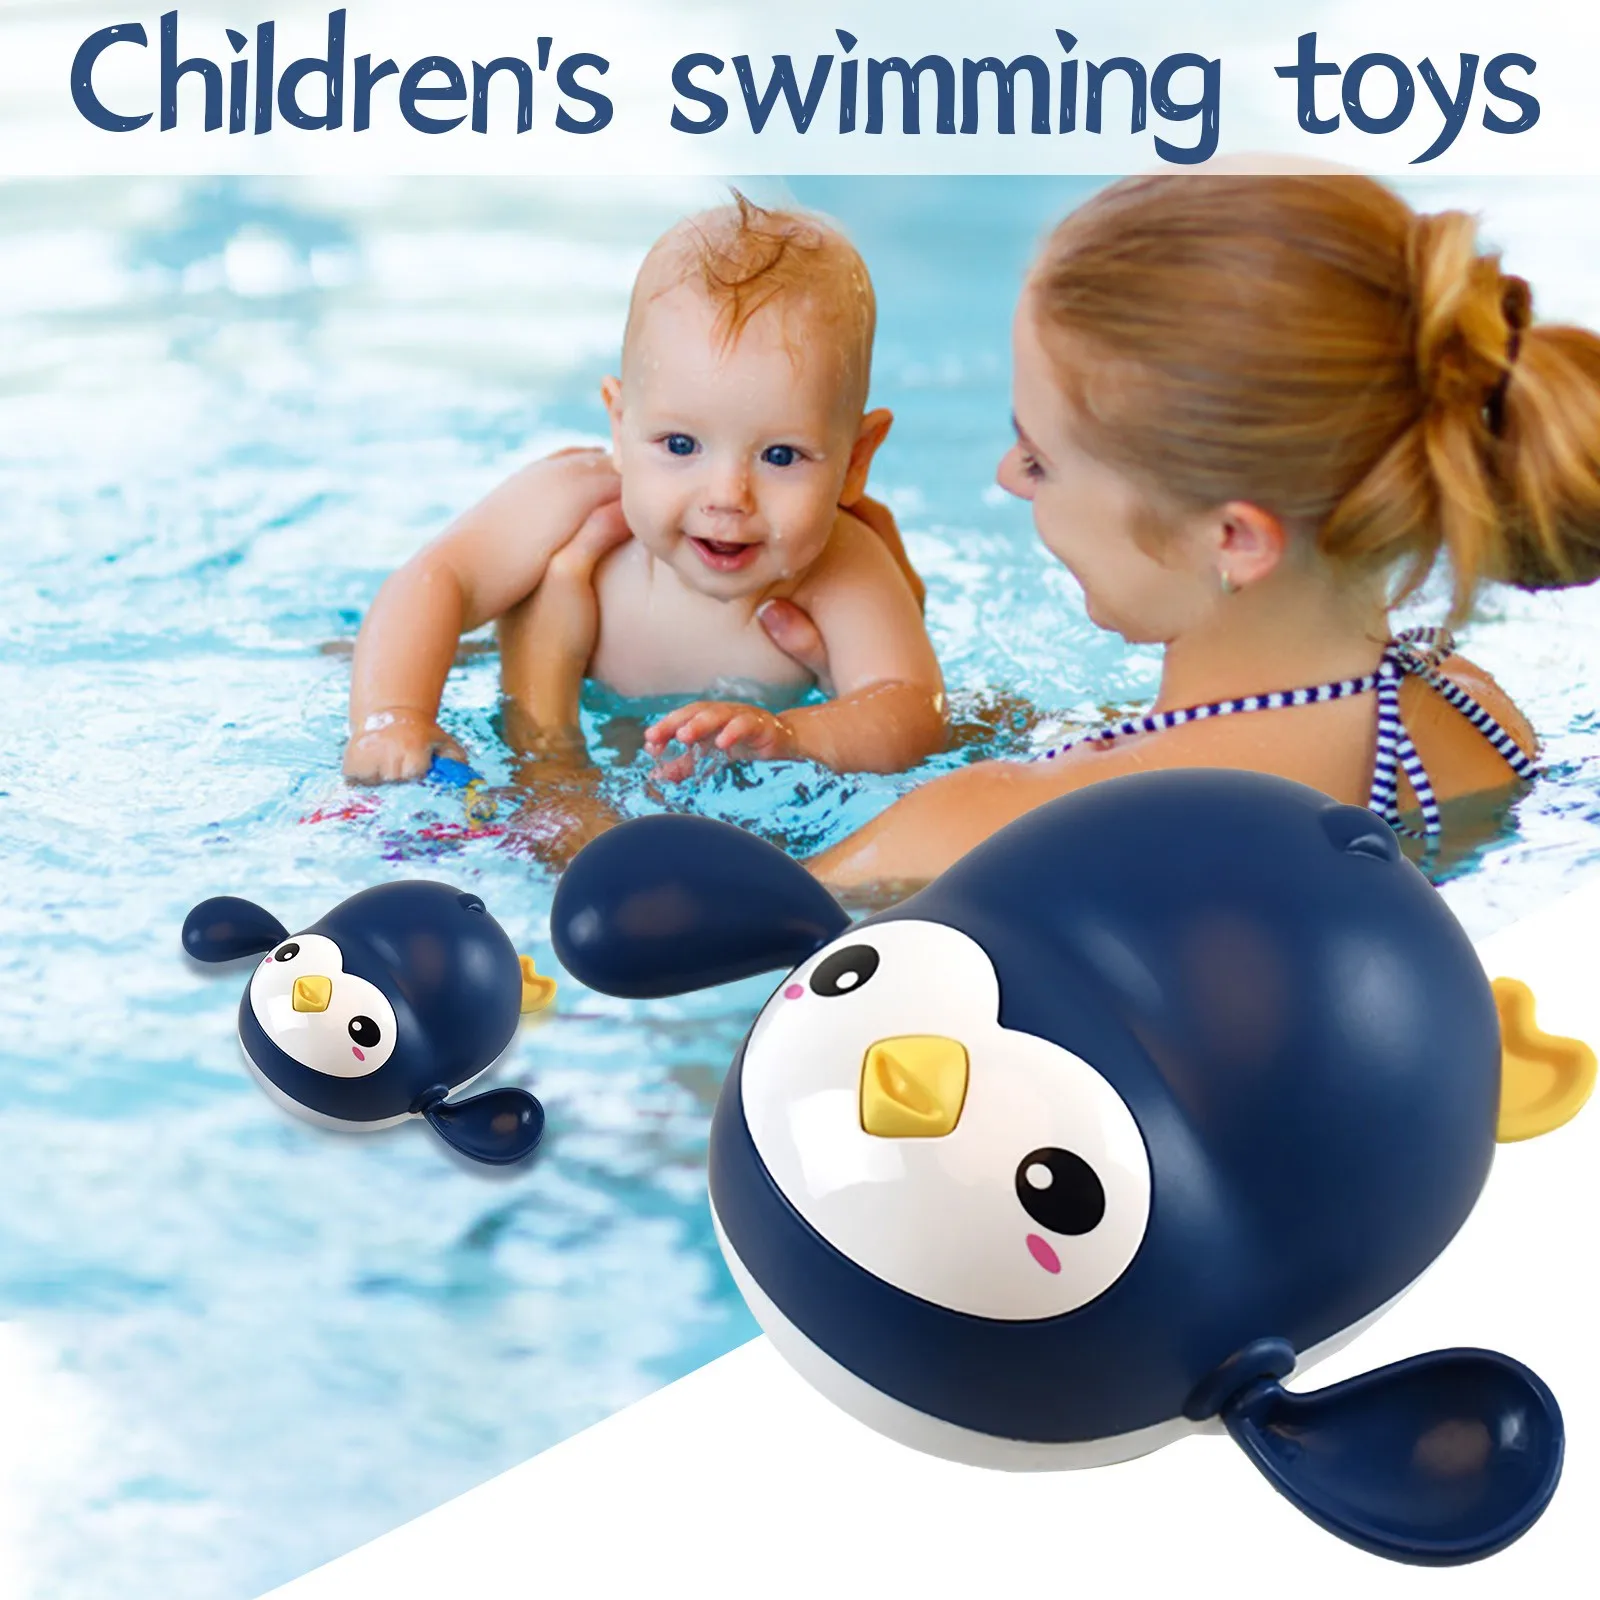 

Детские Игрушки для ванны с маленьким пингвином, детская игрушка для бассейна, милая заводная игрушка с маленьким пингвином, набор игрушек ...